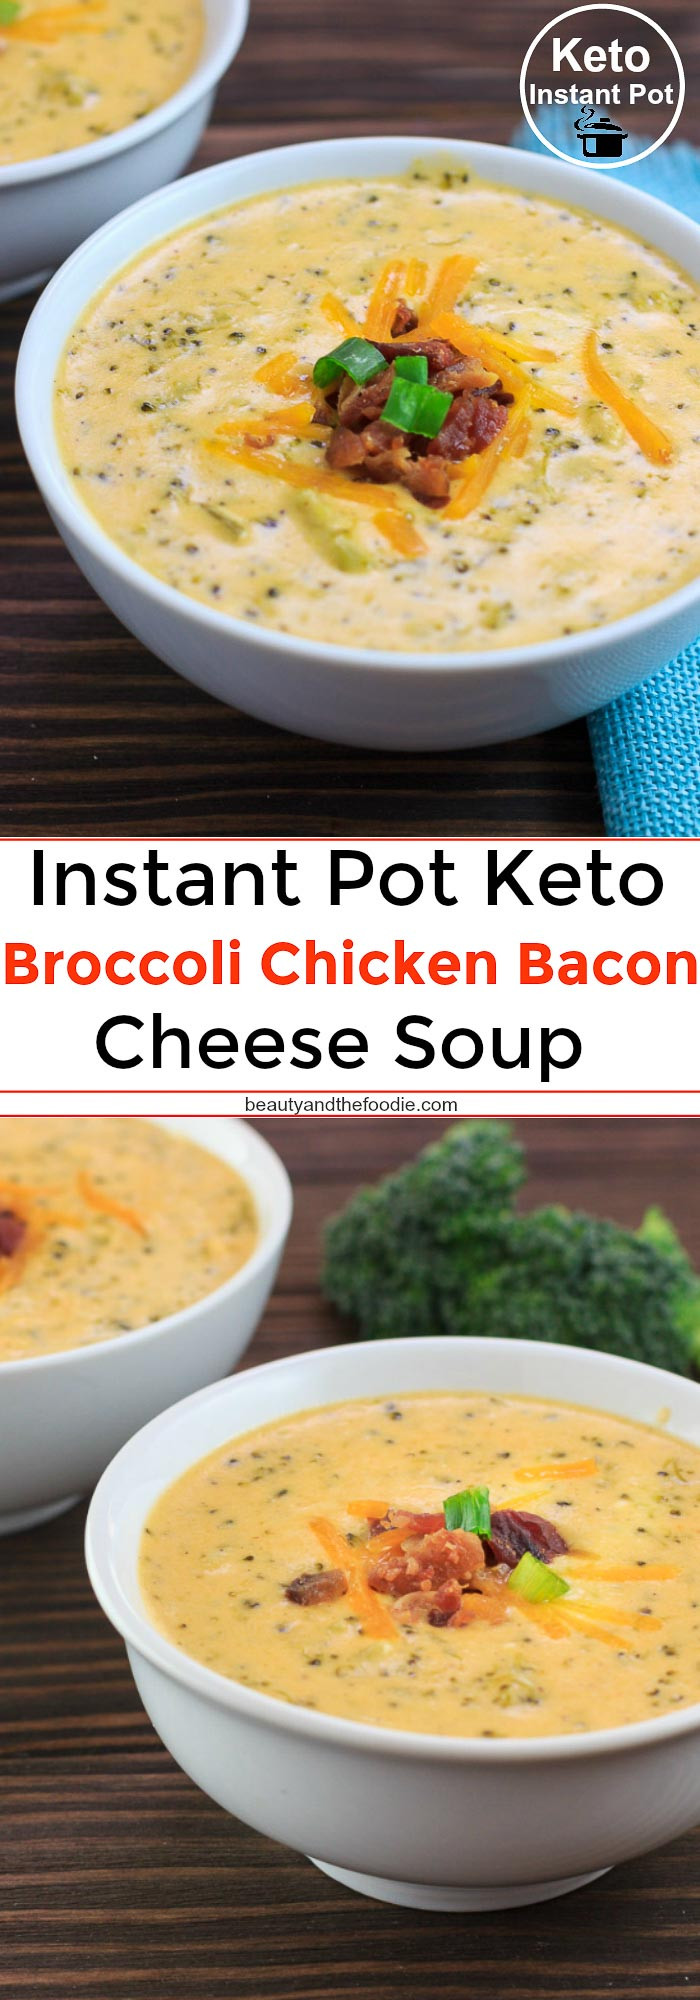 Instapot Keto Chicken And Broccoli Recipes Instant Pot Keto Broccoli Chicken Bacon Cheese Soup